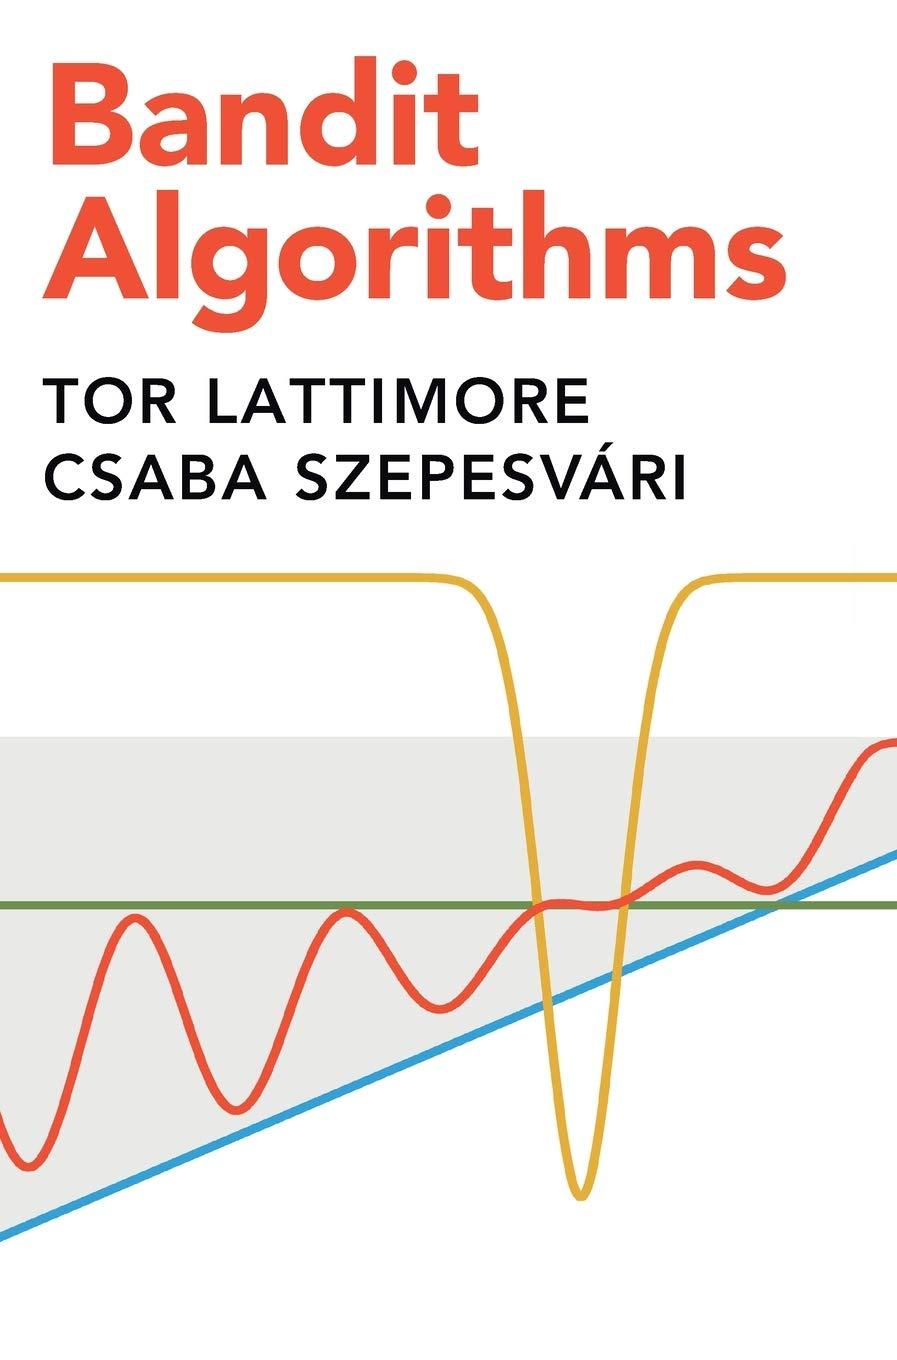 bandit algorithms 1st edition tor lattimore, csaba szepesvári 1108486827, 9781108486828